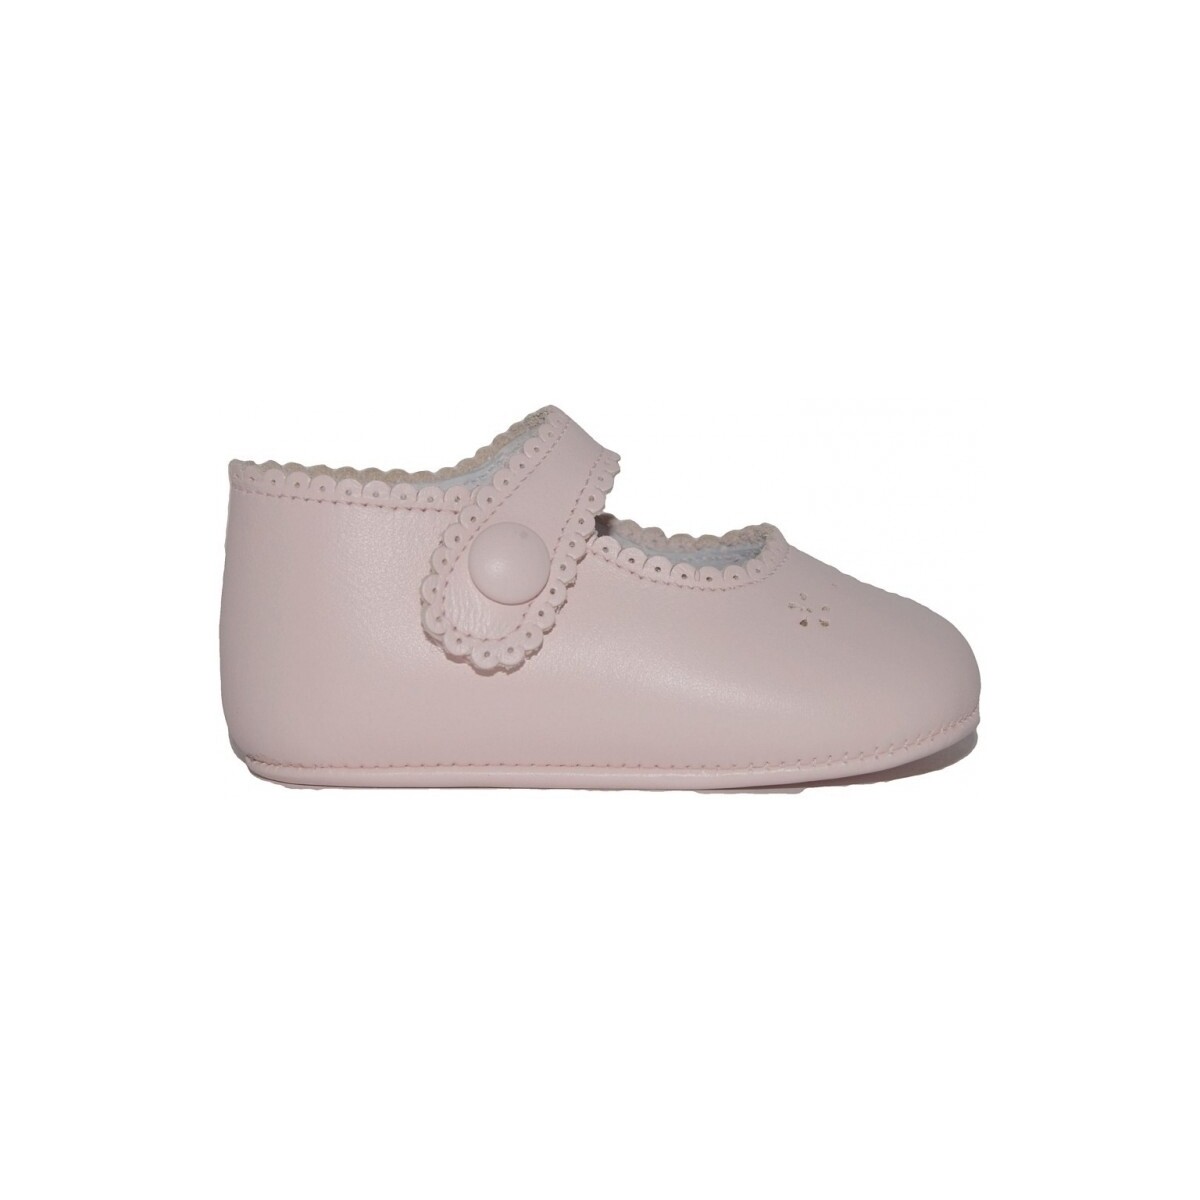 Schuhe Jungen Babyschuhe Colores 12827-15 Rosa